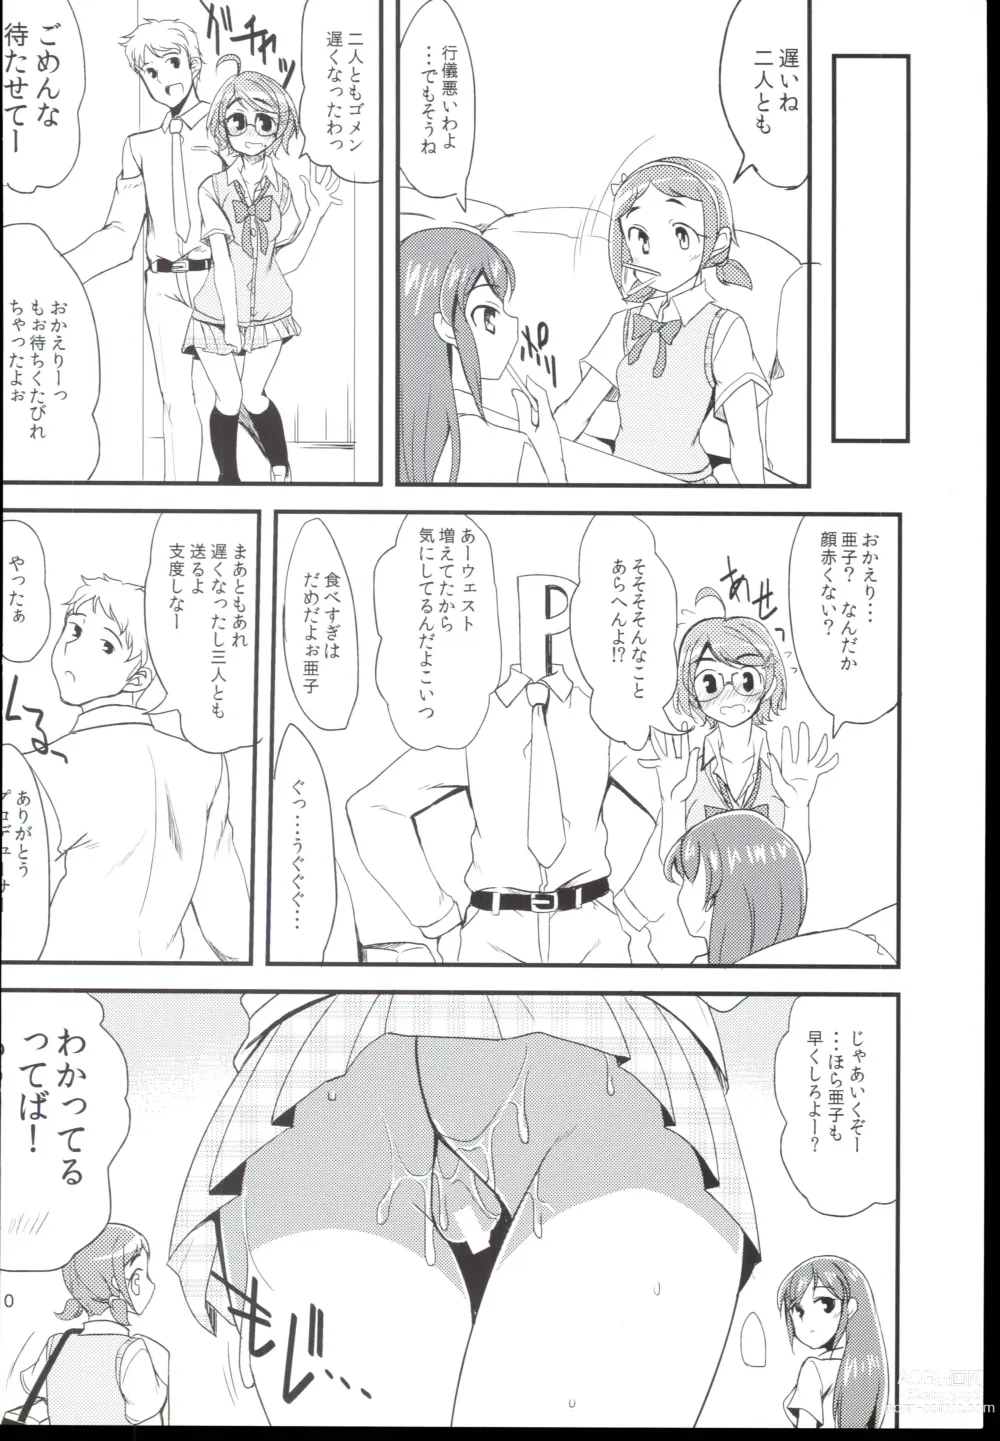 Page 10 of doujinshi Futari no Kankei.